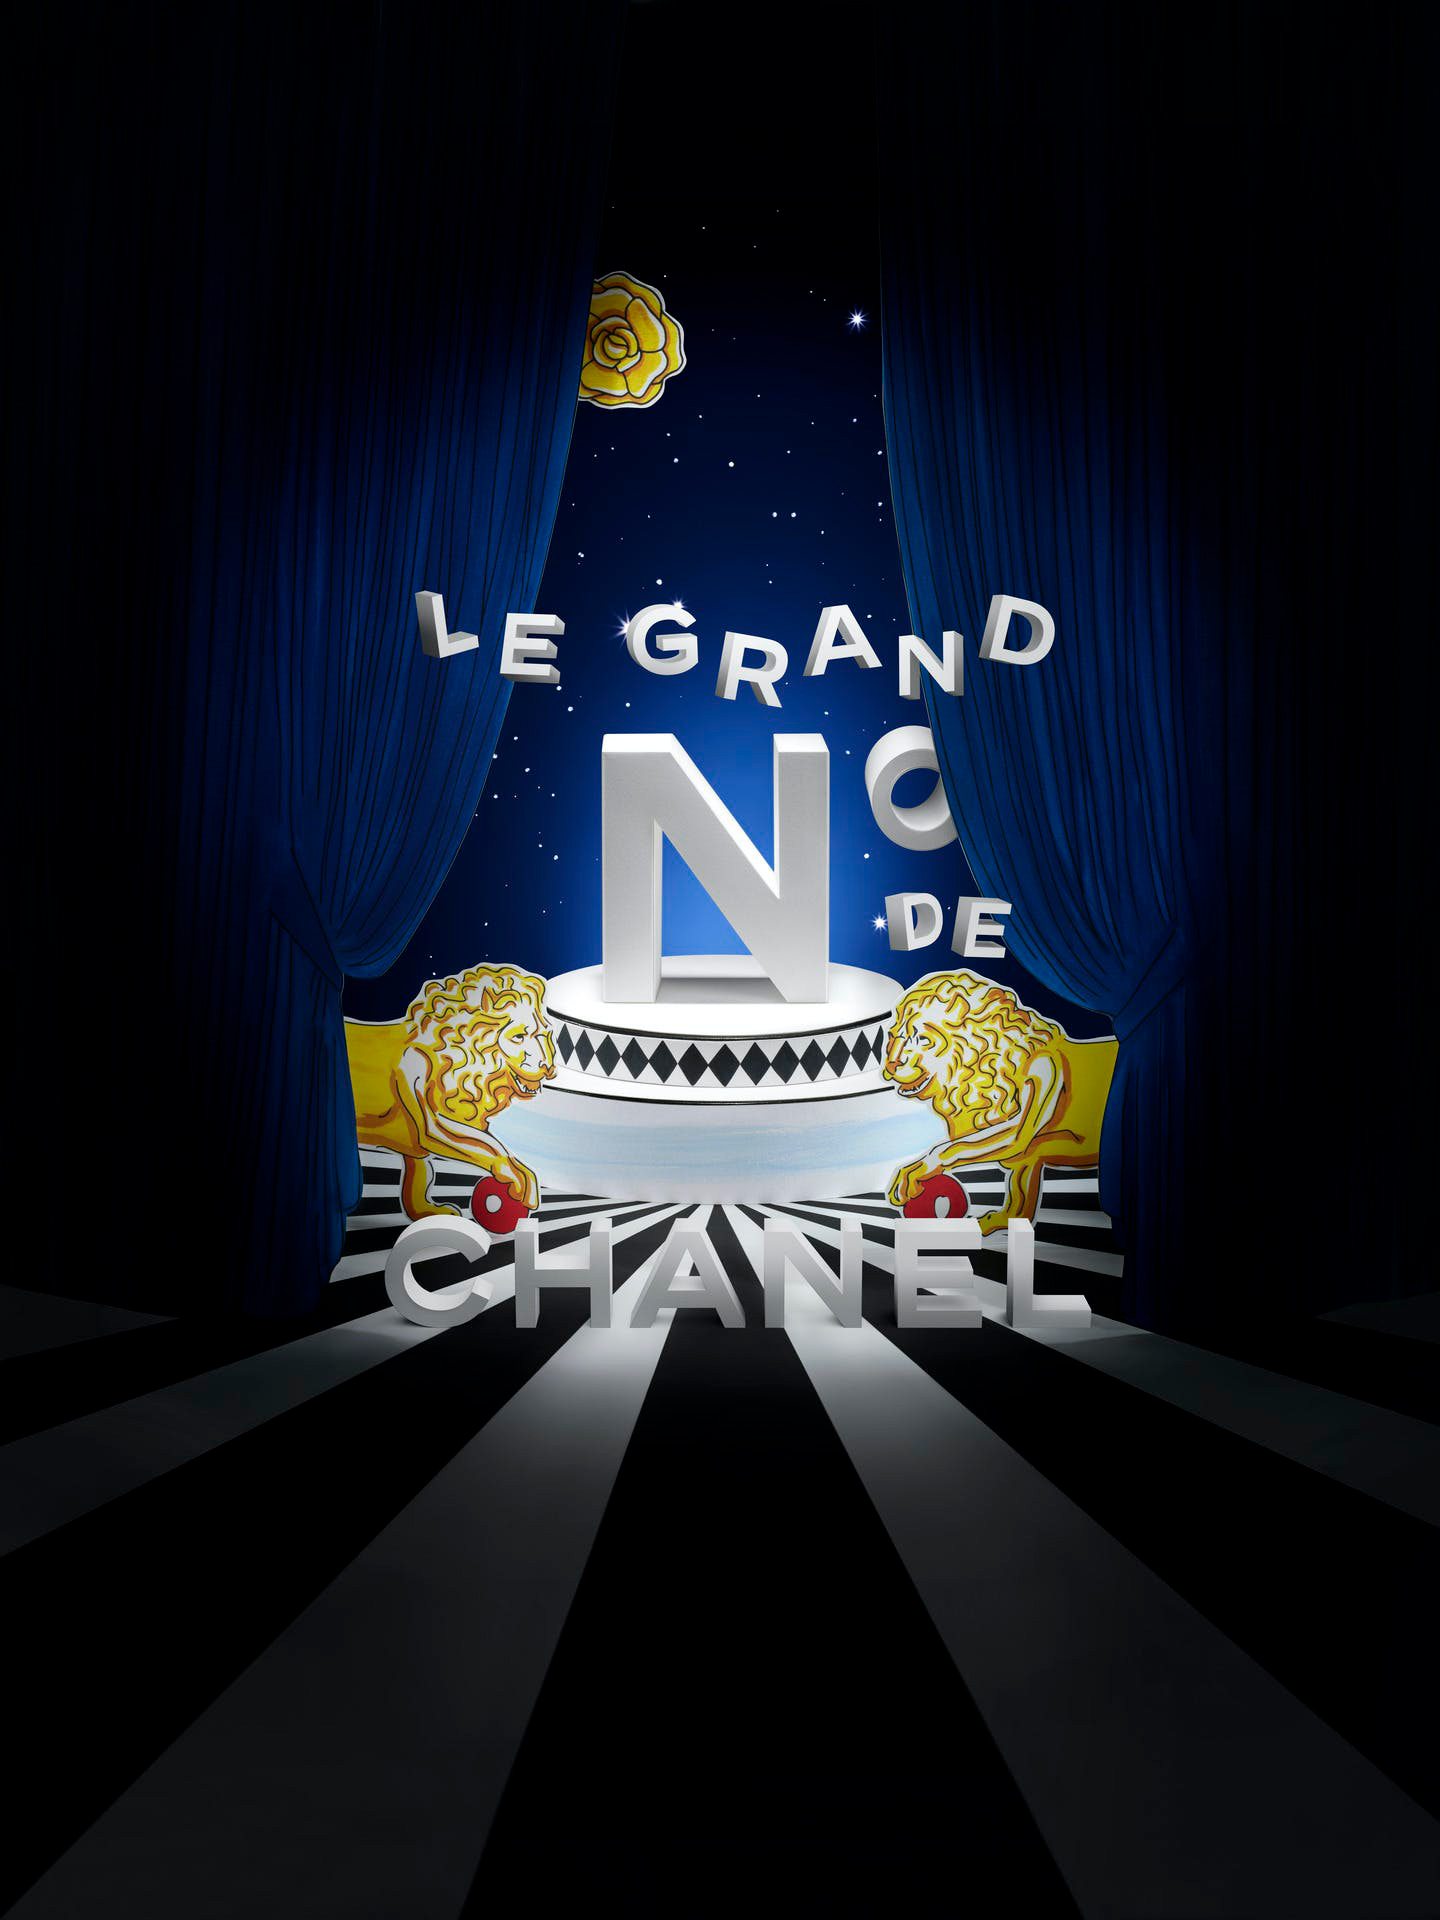 L’univers enivrant des parfums Chanel s’expose au Grand Palais Éphémère